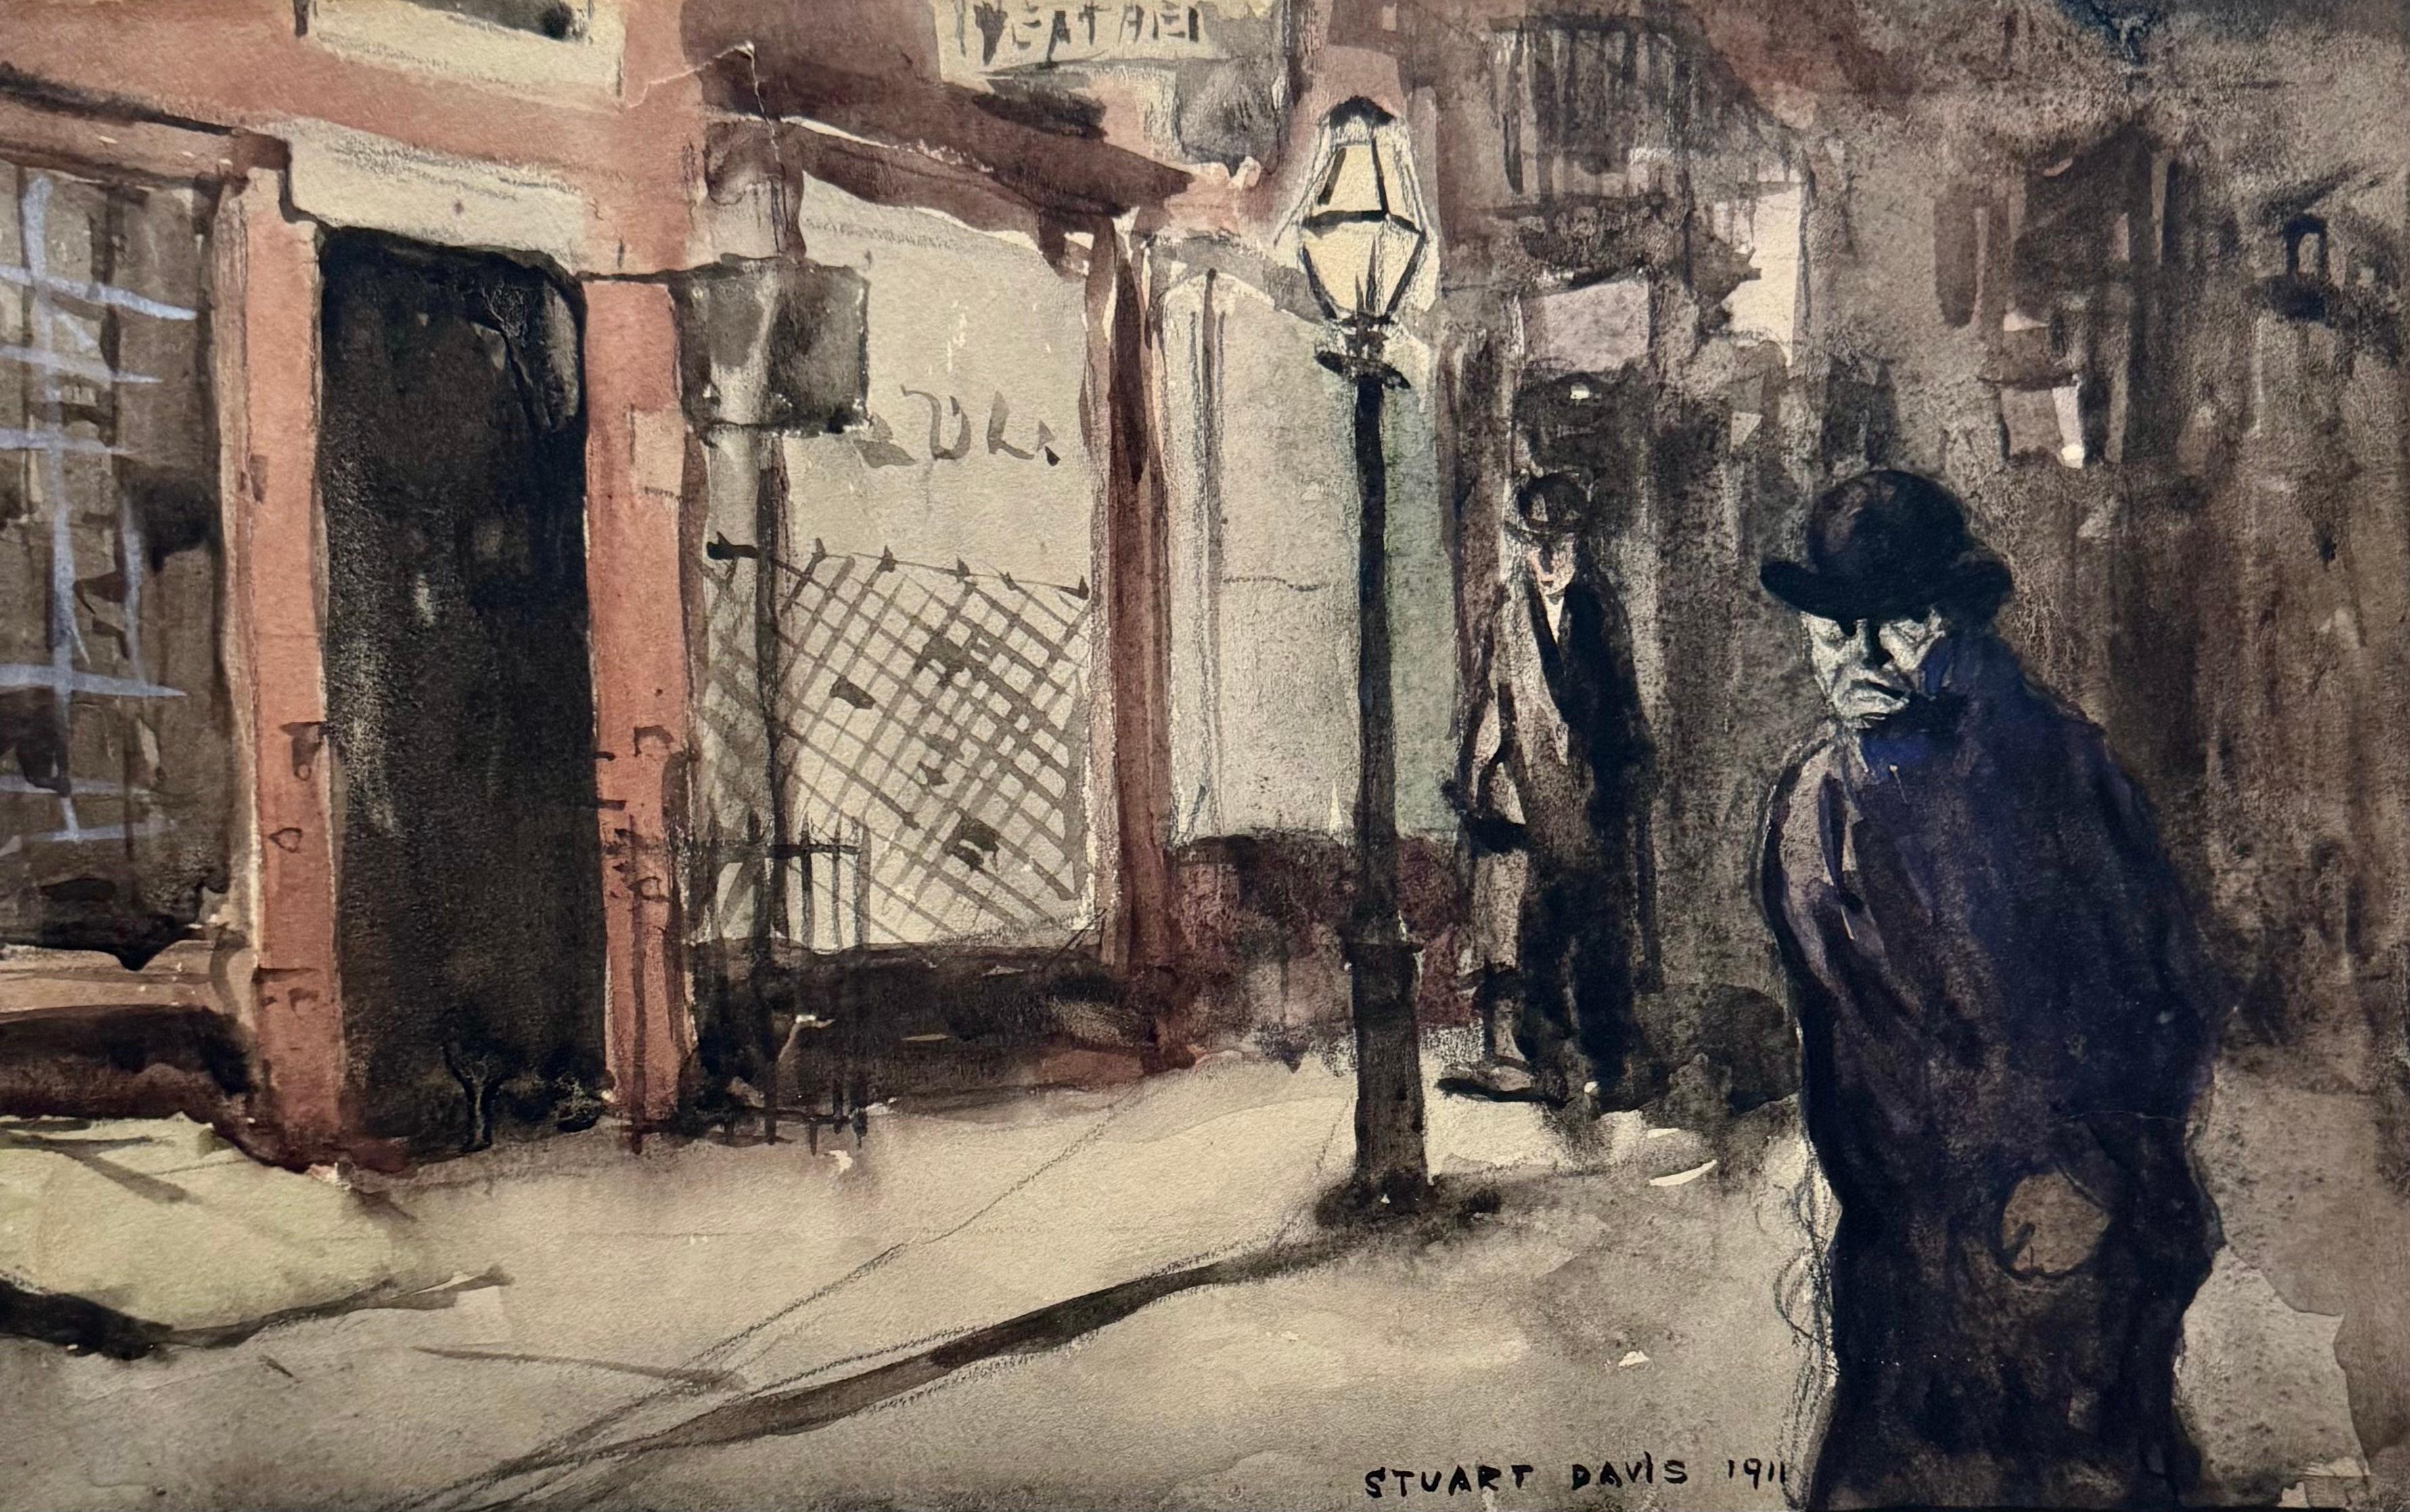 Landscape Art Stuart Davis - Deux hommes dans une rue début du 20e siècle avec le fauvisme social réaliste américain